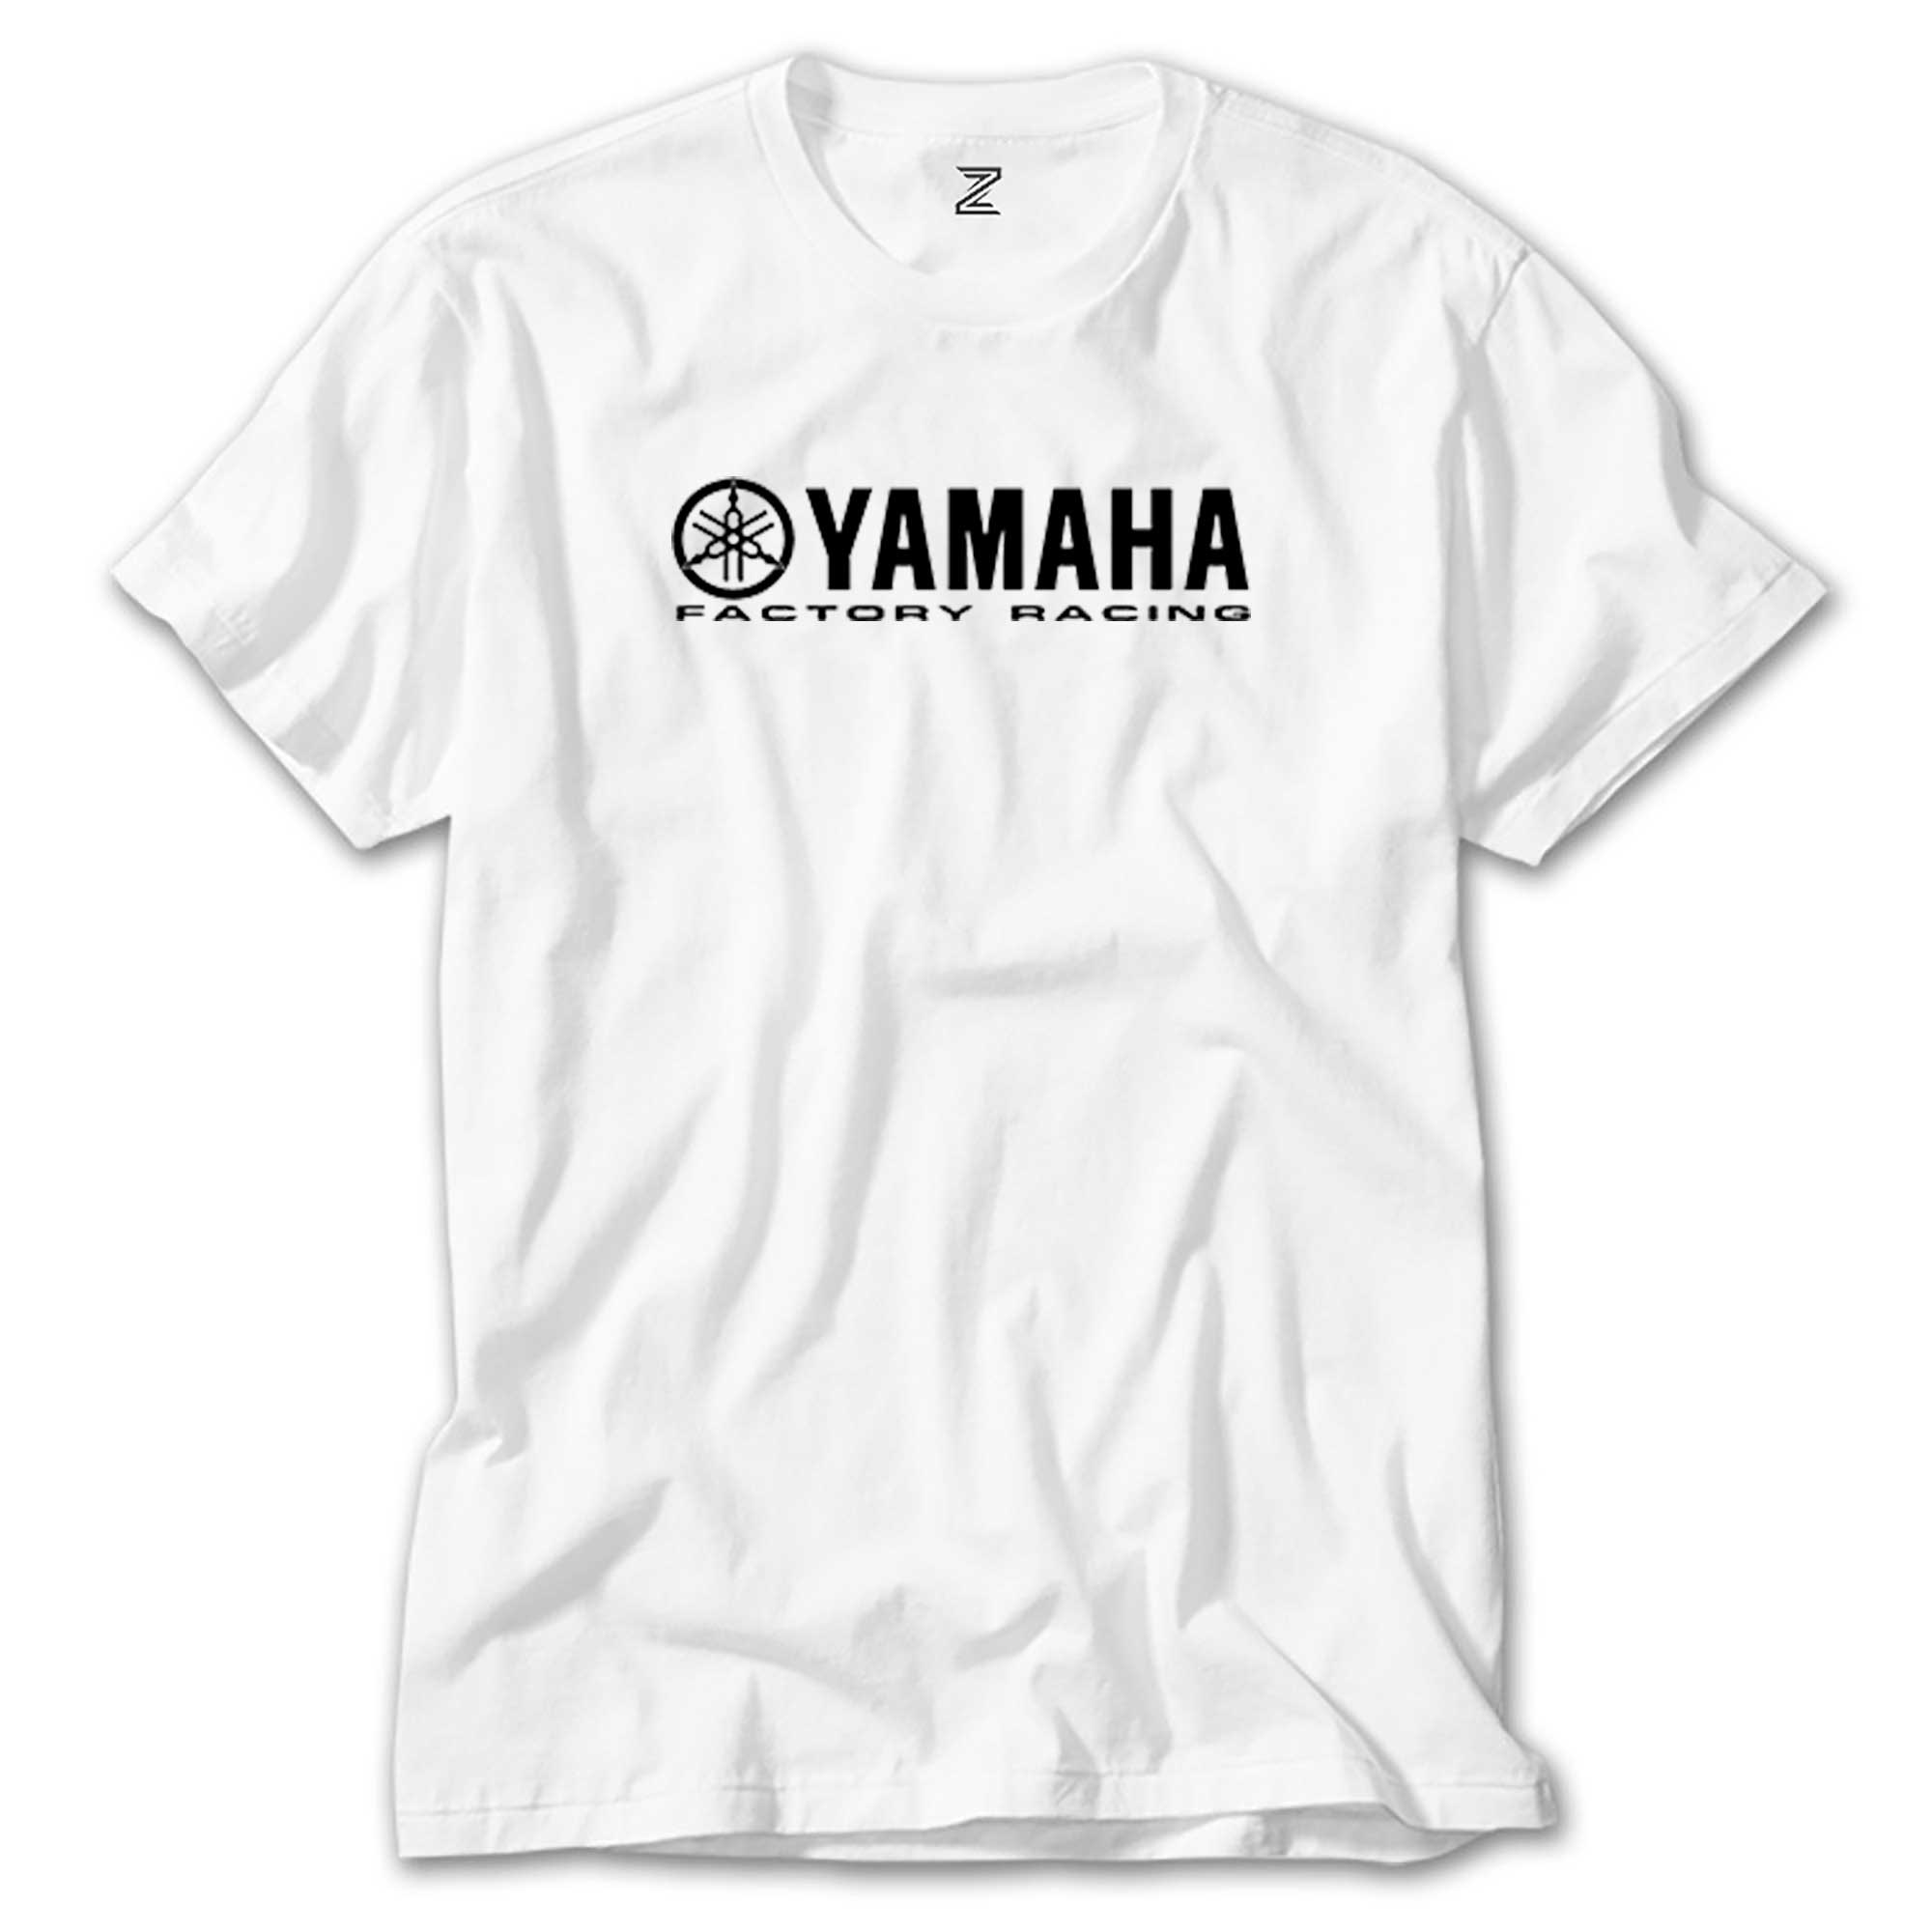 Yamaha Factory Racing Beyaz Tişört